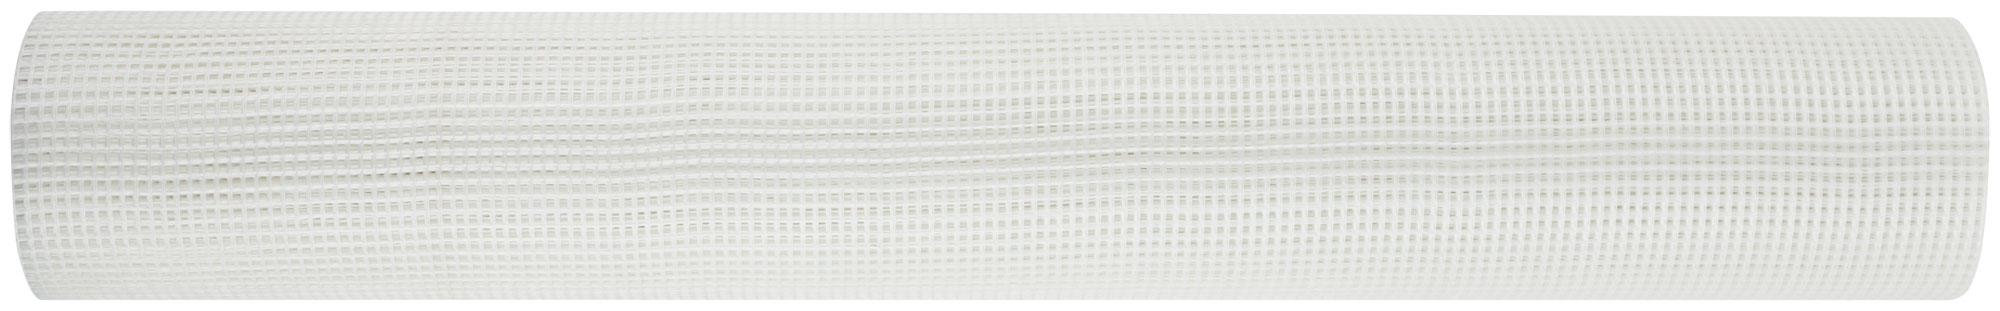 Сетка стеклотканевая интерьерная, ячейка 2х2 мм, плотность 45 гр/м2,  500 мм х 10 м стеклотканевая интерьерная сетка fit